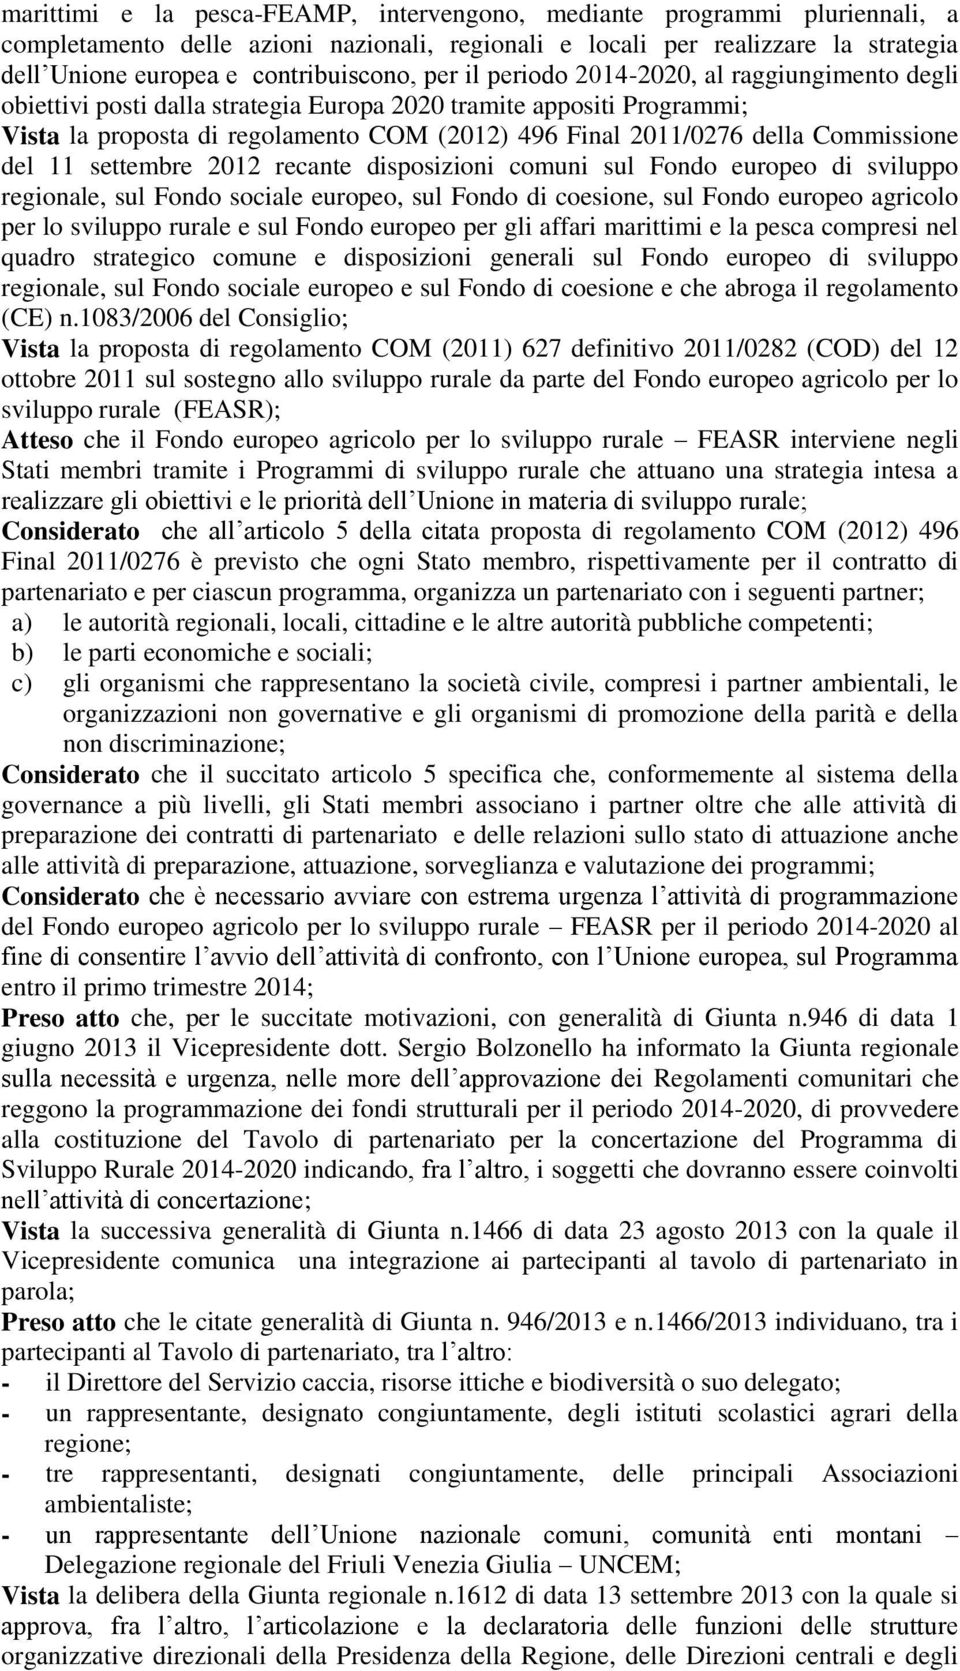 Commissione del 11 settembre 2012 recante disposizioni comuni sul Fondo europeo di sviluppo regionale, sul Fondo sociale europeo, sul Fondo di coesione, sul Fondo europeo agricolo per lo sviluppo